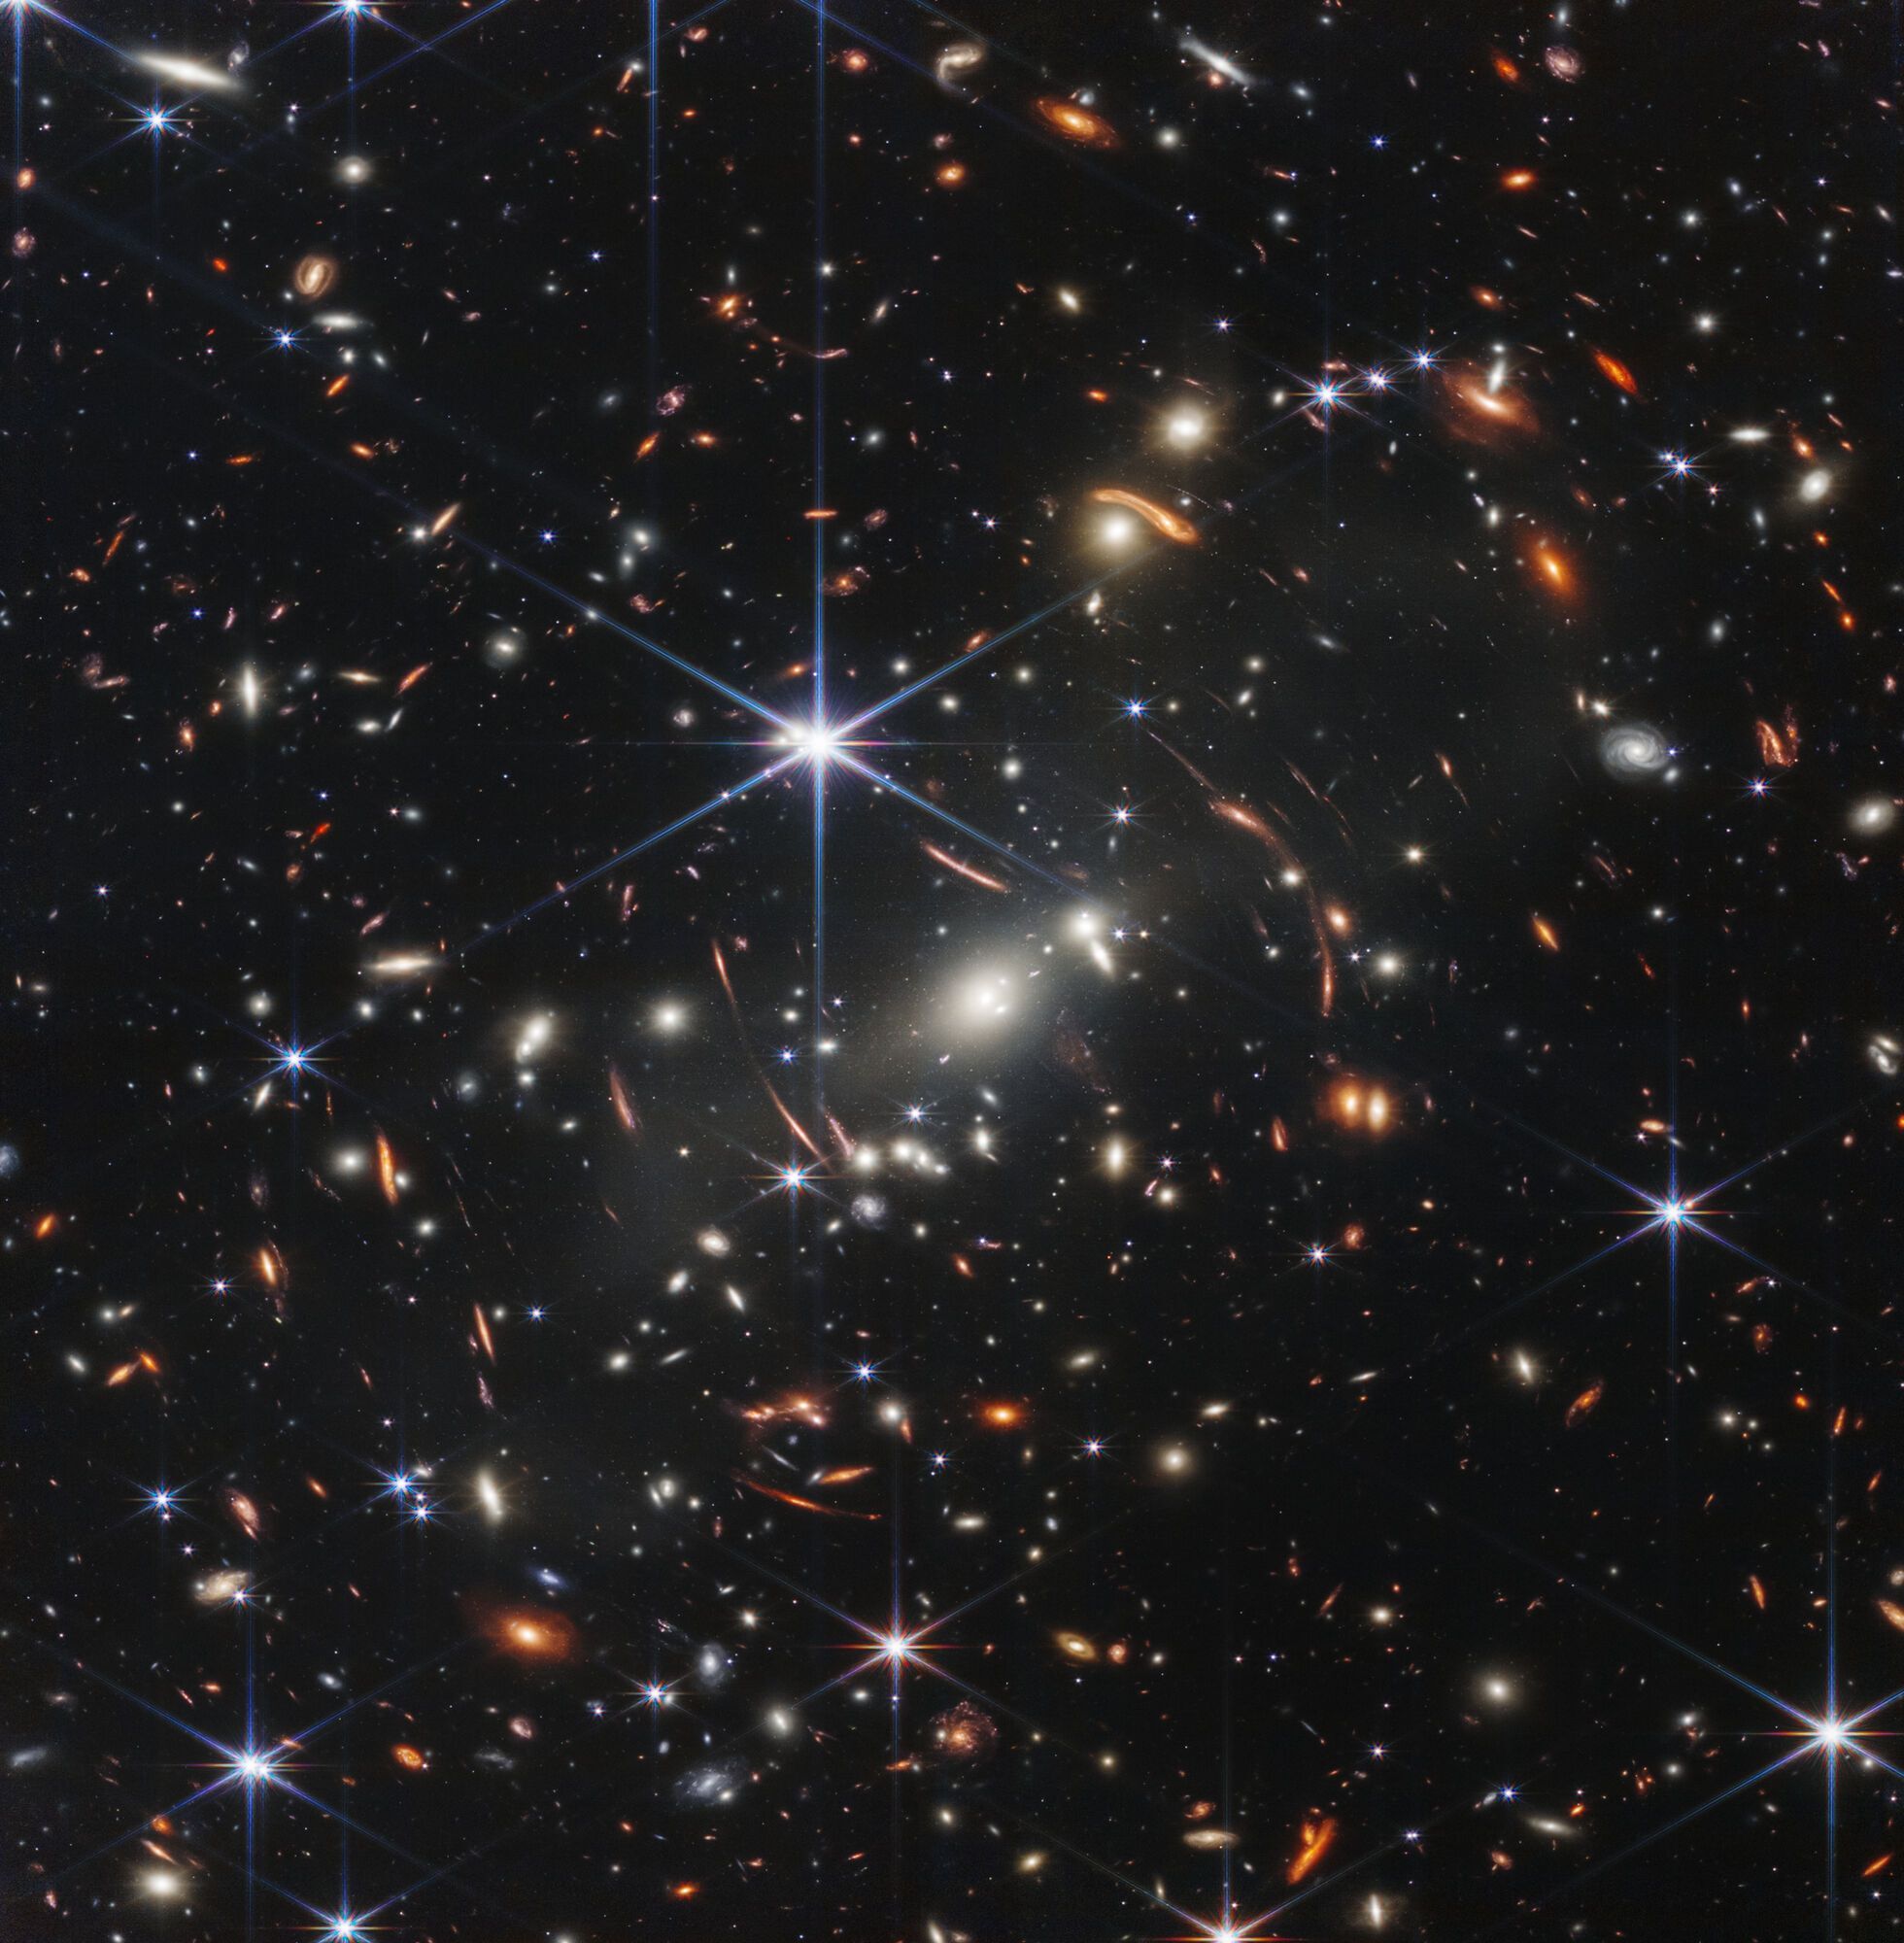 SMACS 0723, скупчення галактик за мільярди світлових років від Землі.